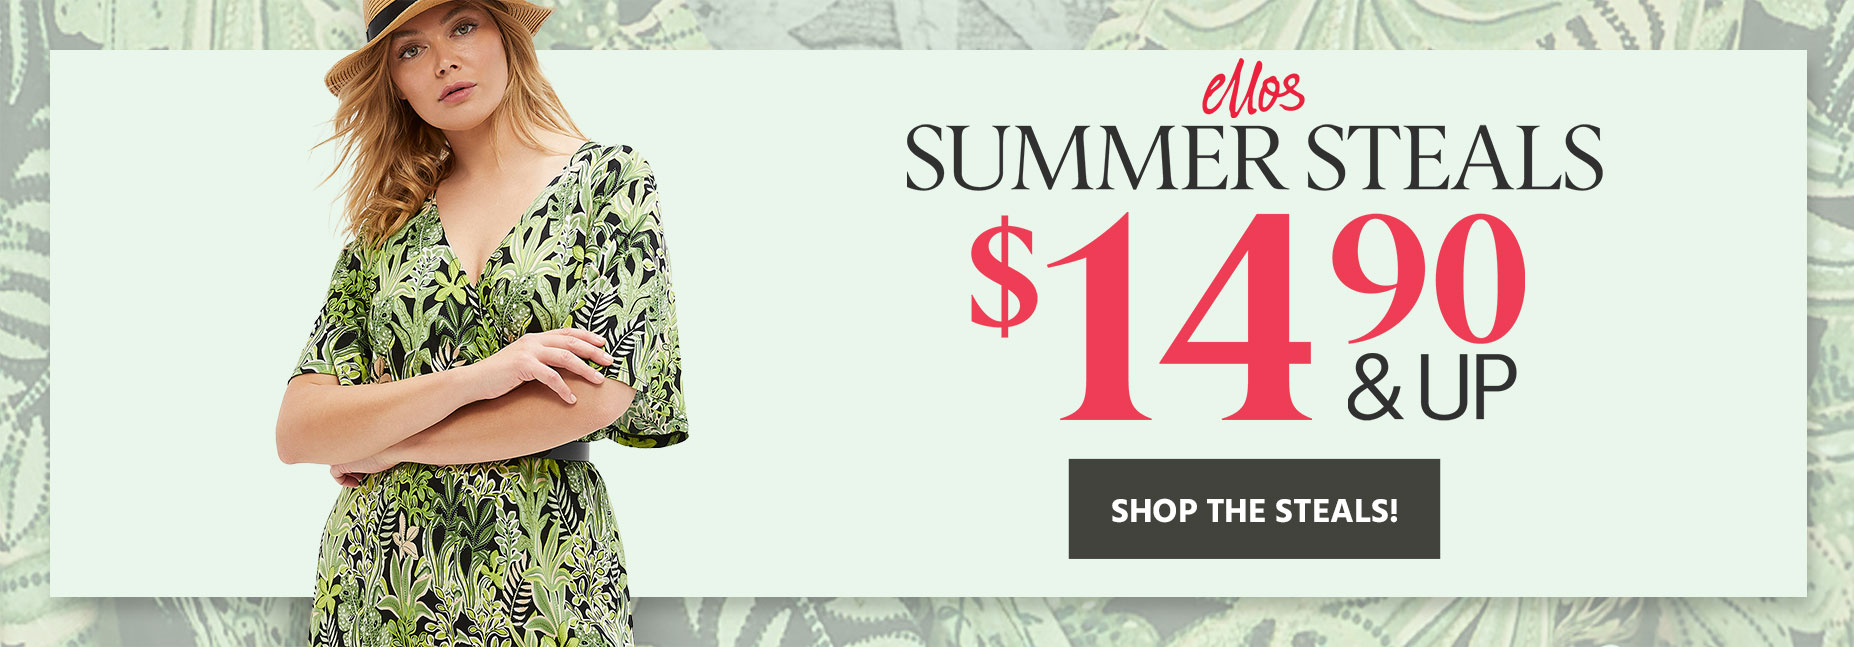 Summer Essentials Ellos - $14.90 & Up